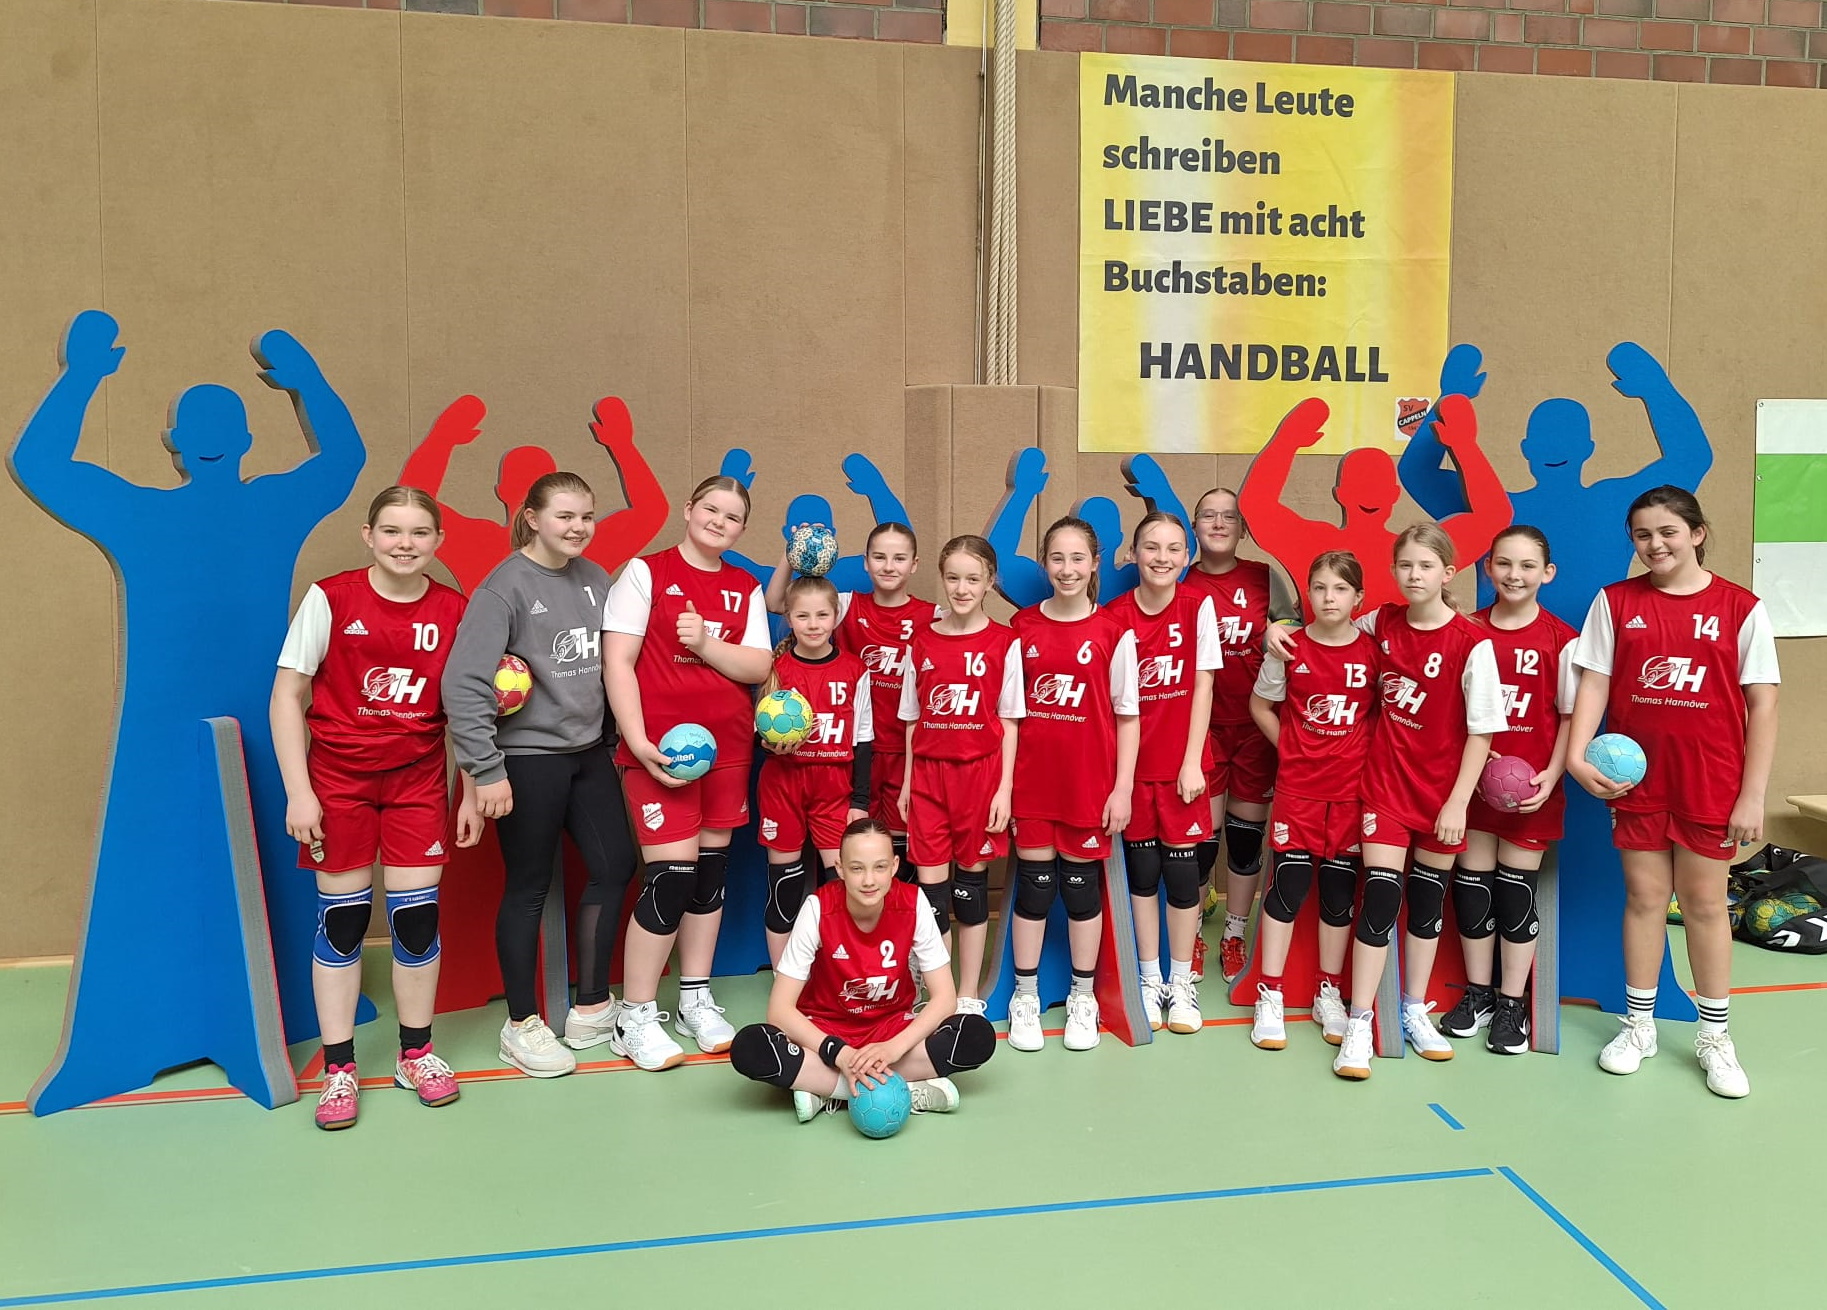 Förderverein realisiert Traum der Handballer